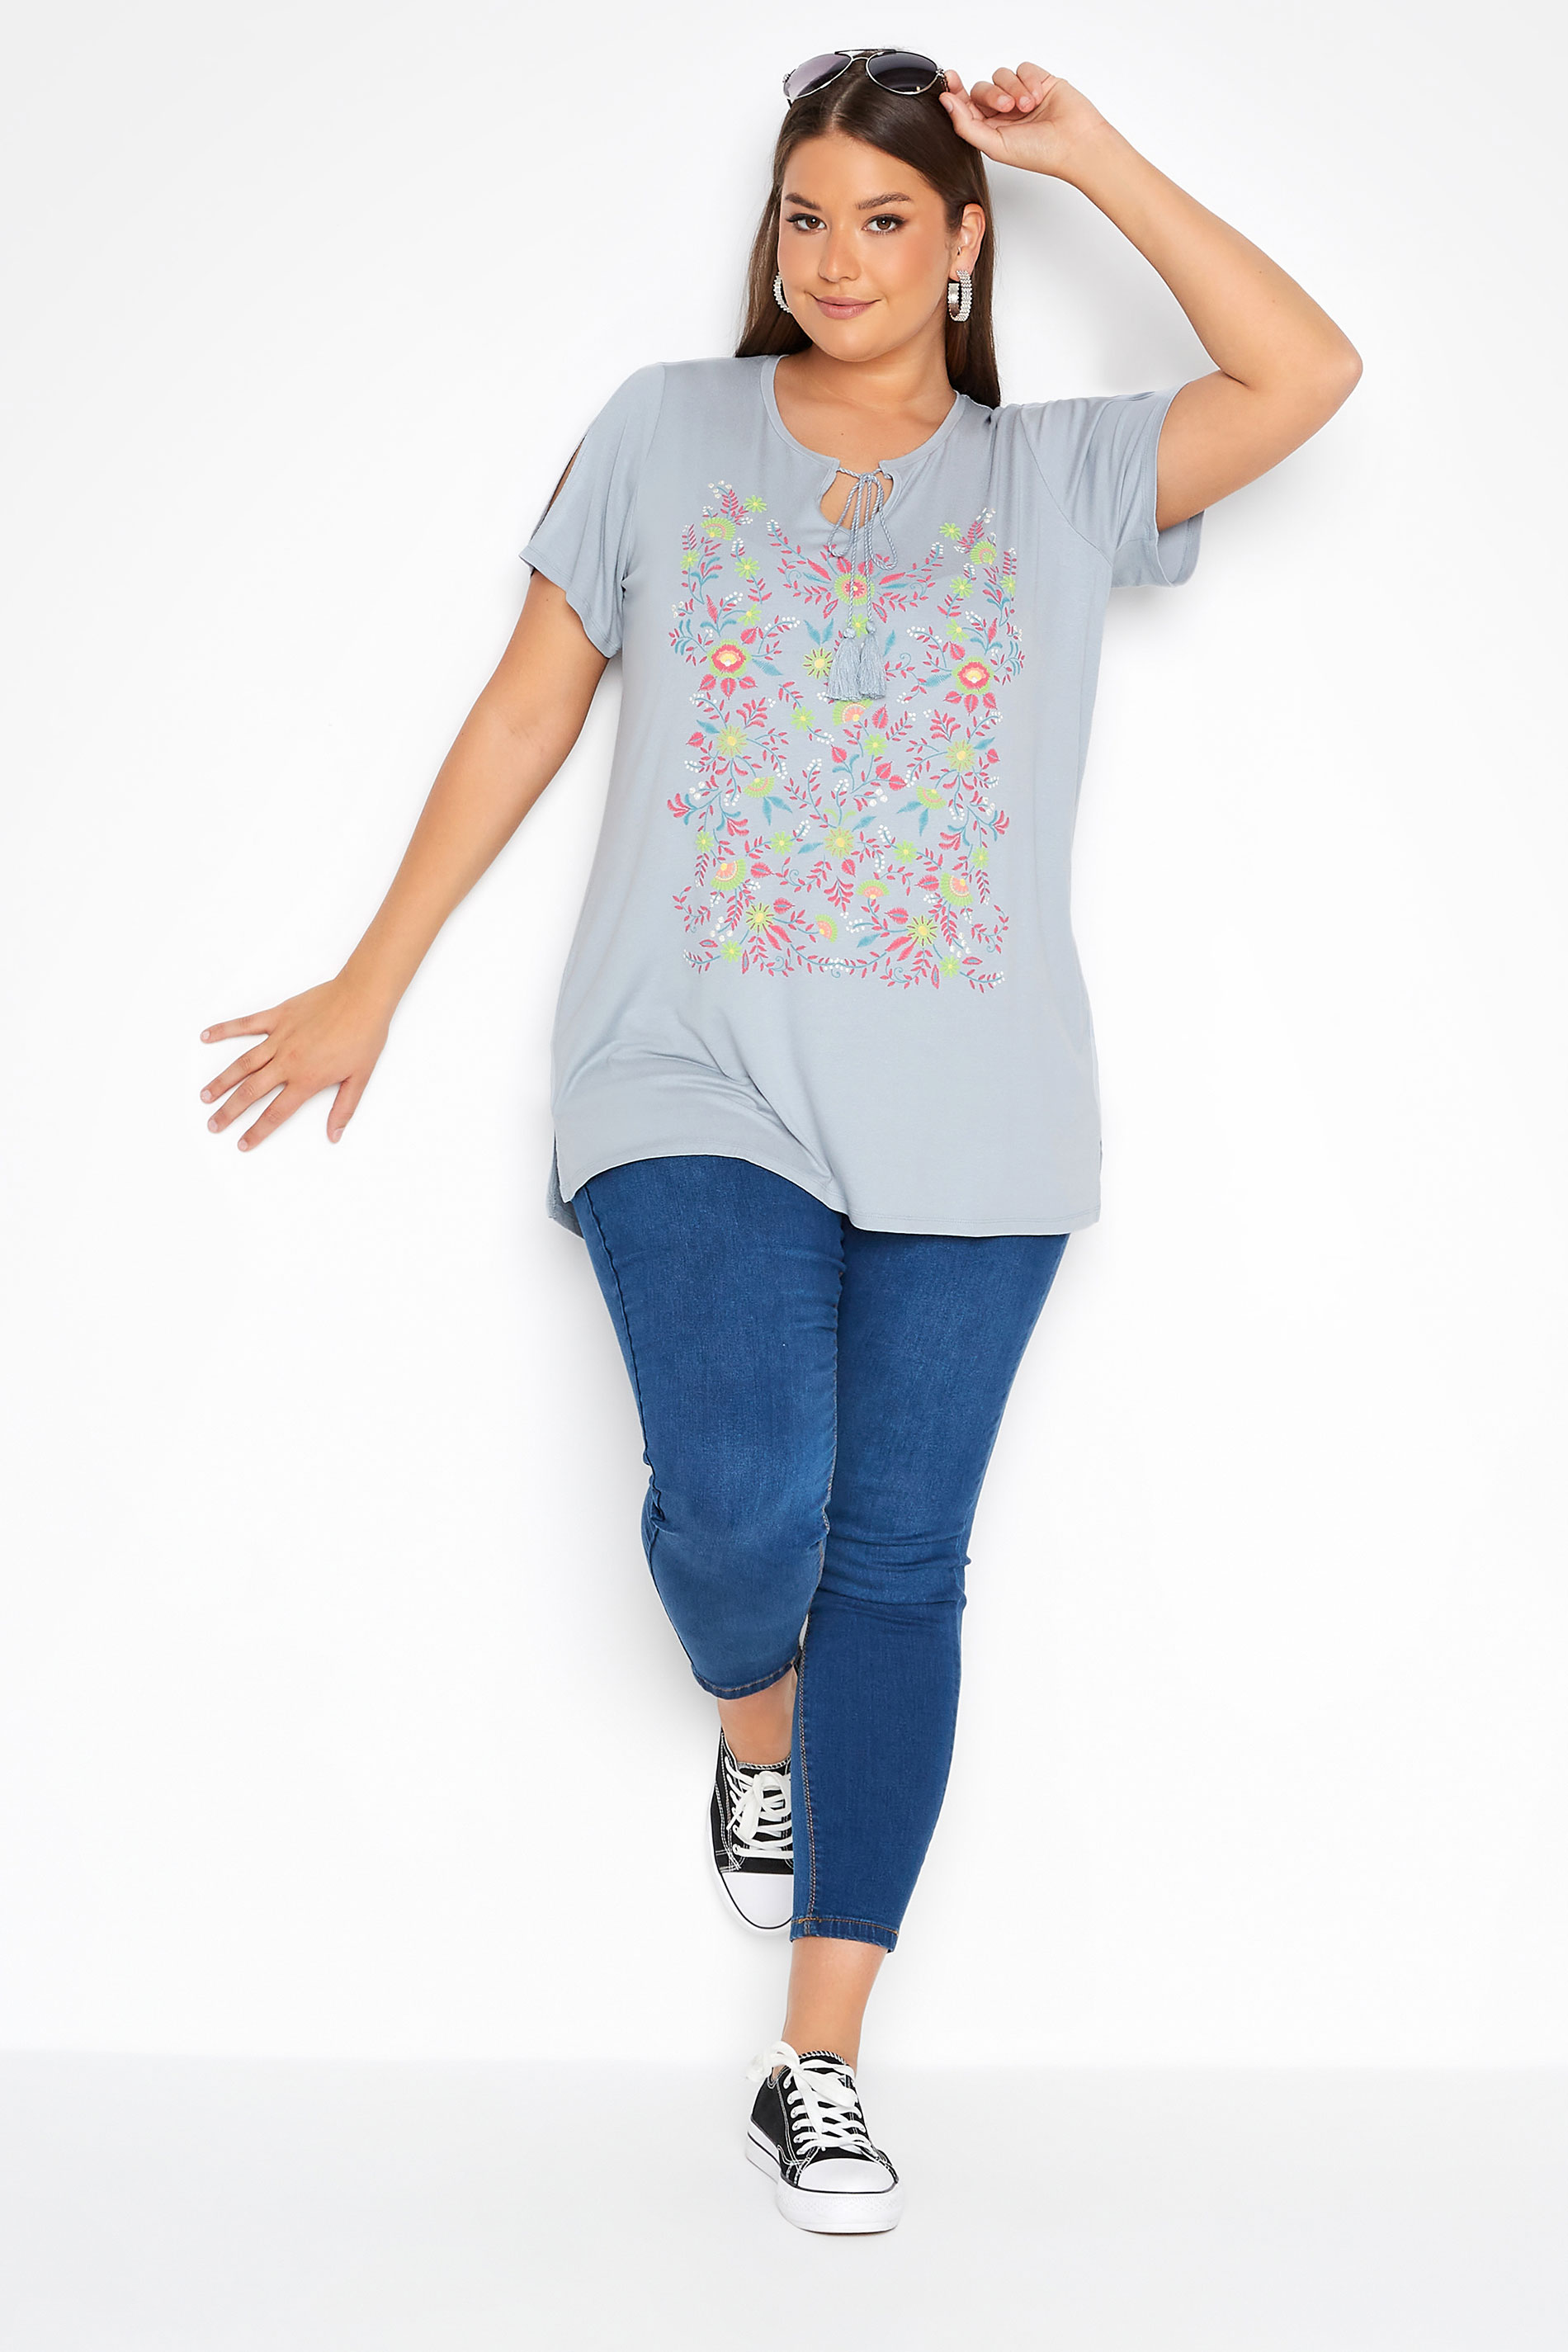 Grande taille  Tops Grande taille  T-Shirts | T-Shirt Gris Design Floral Manches Découpées - QU01134